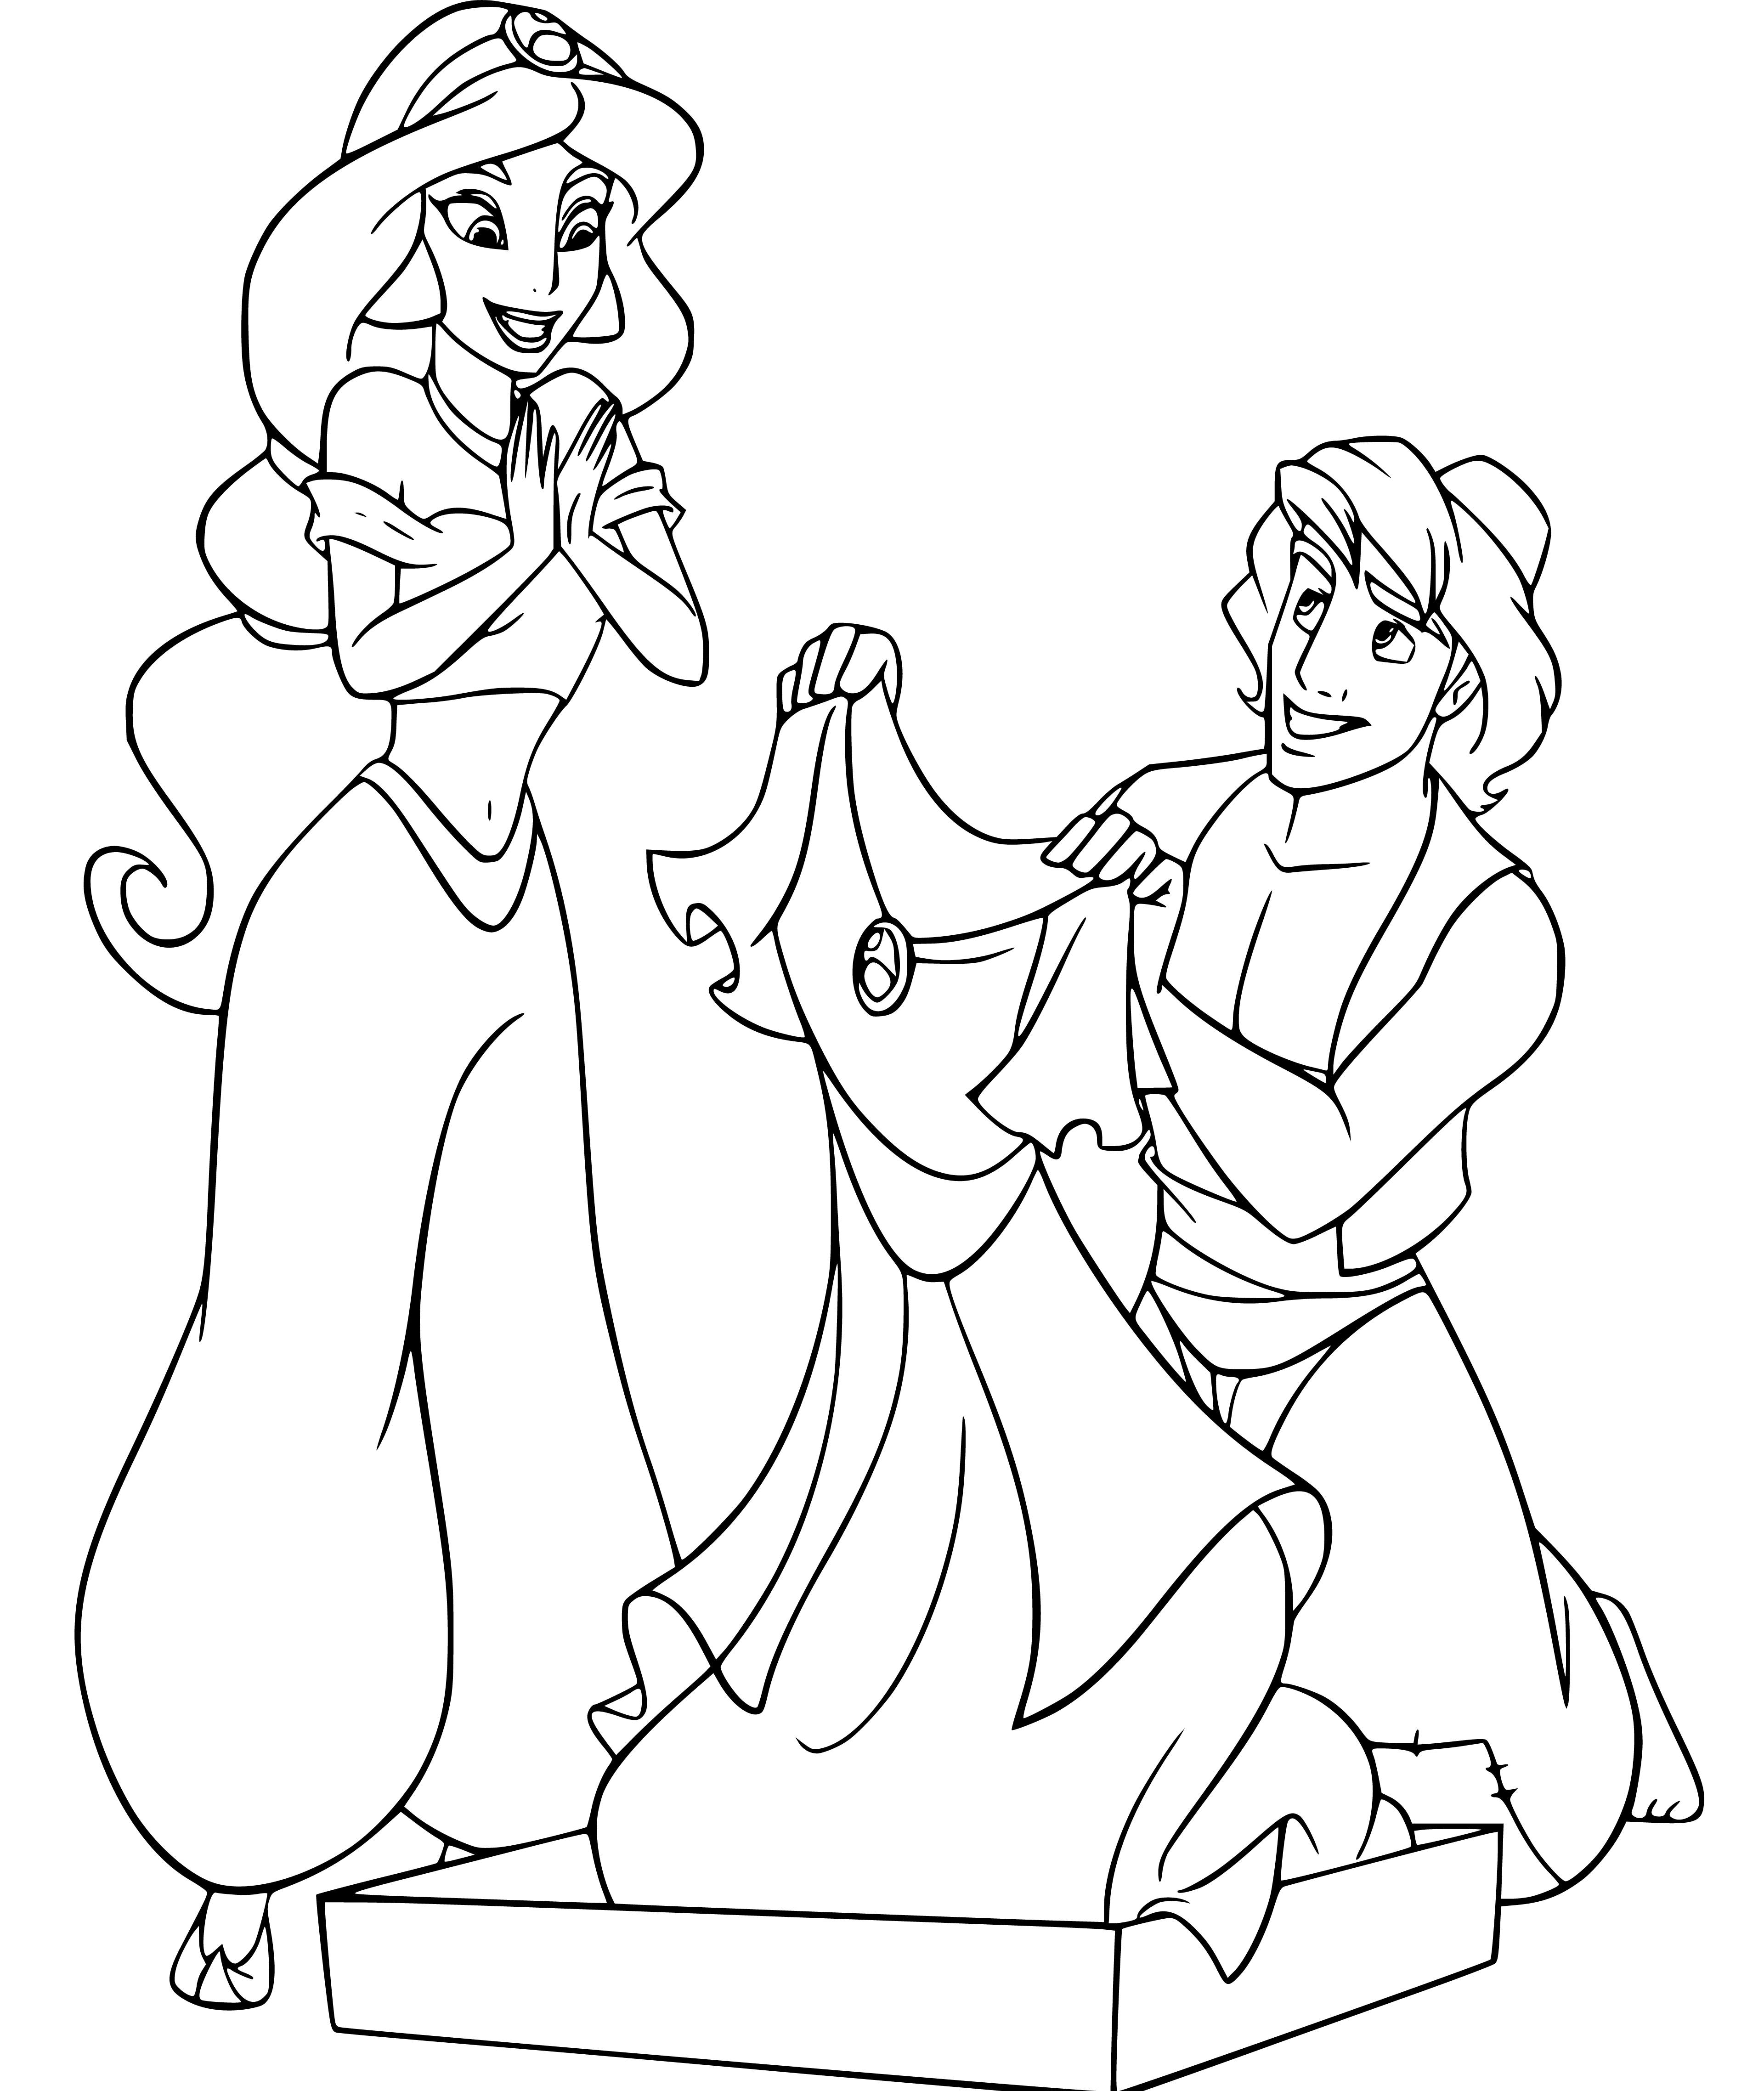 Printable Jasmine and Aladdin Coloring Page for kids.